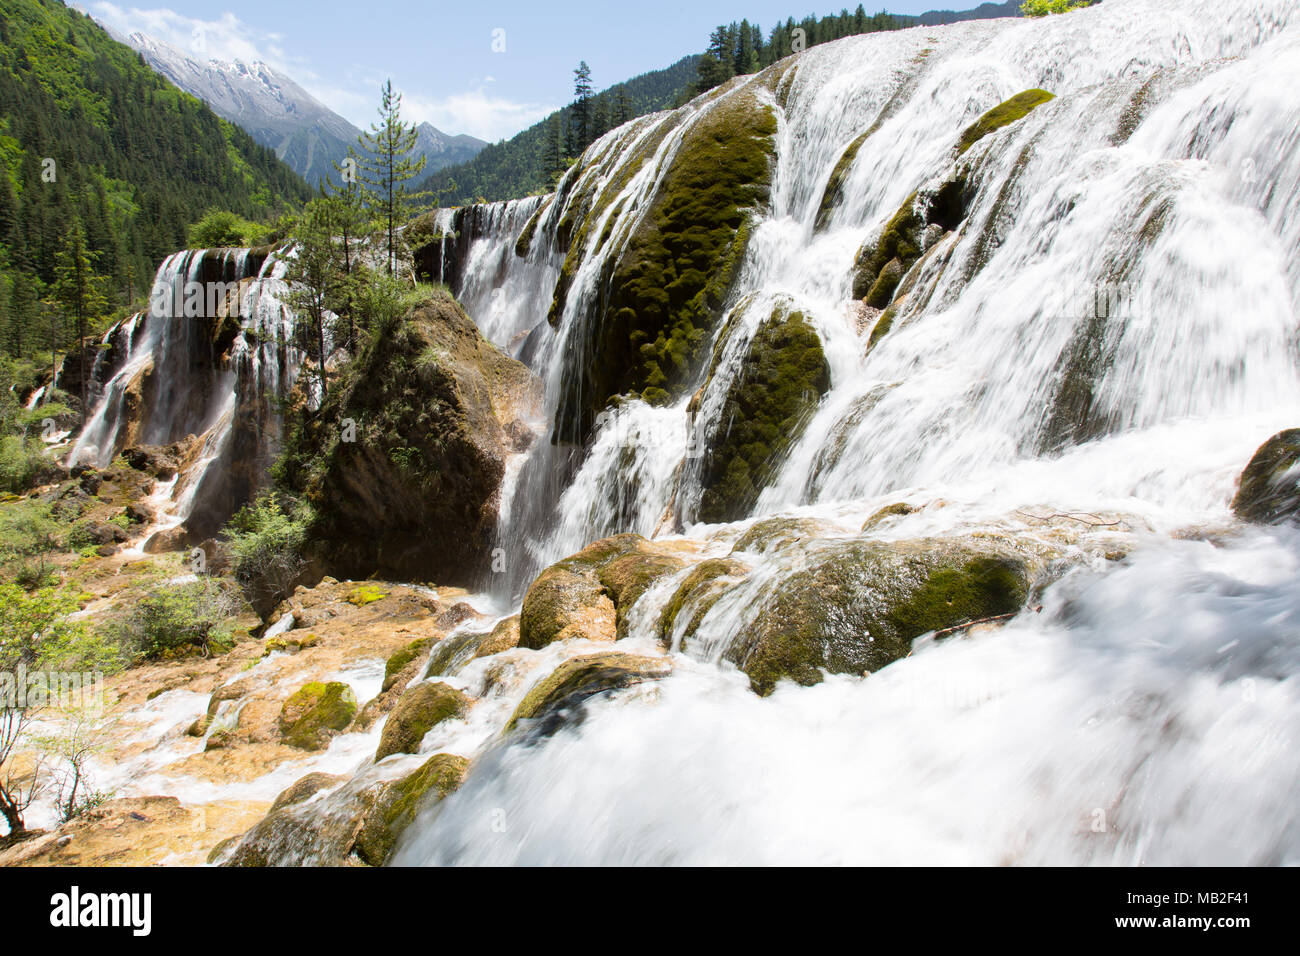 Waterfall in China, Jiuzhaigou Stock Photo